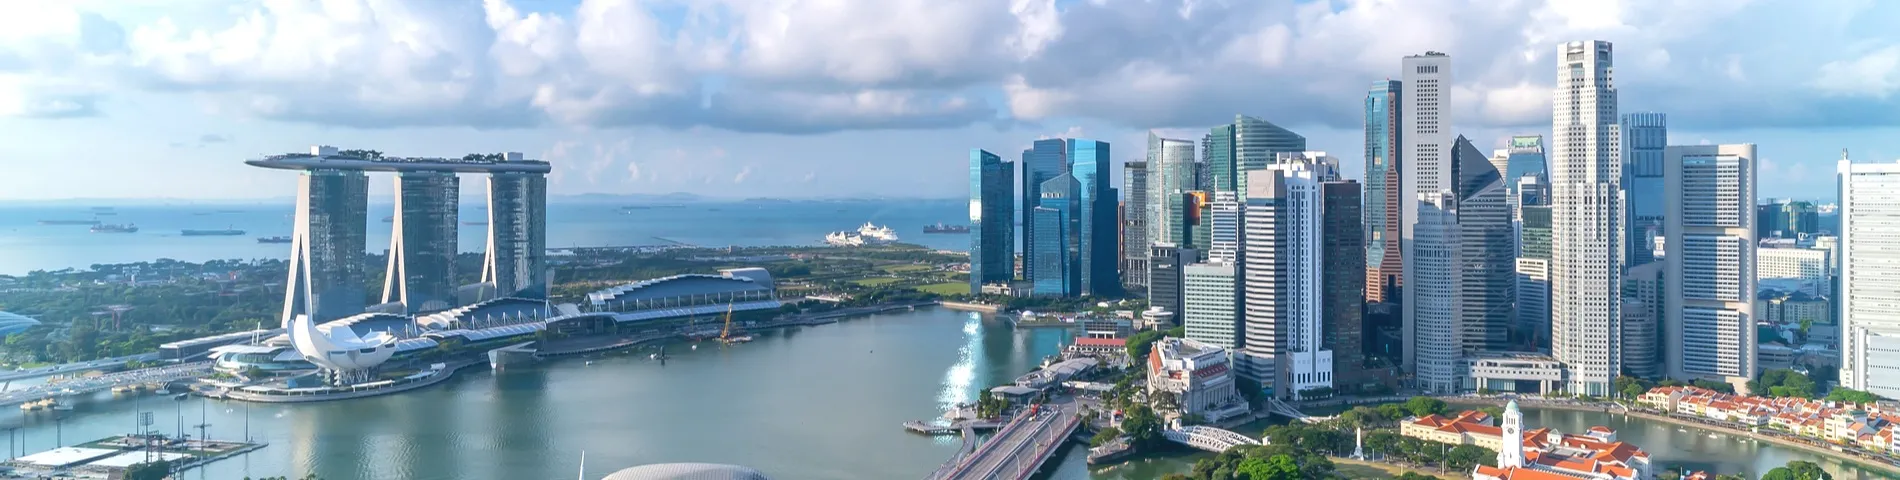 싱가포르 - 기본